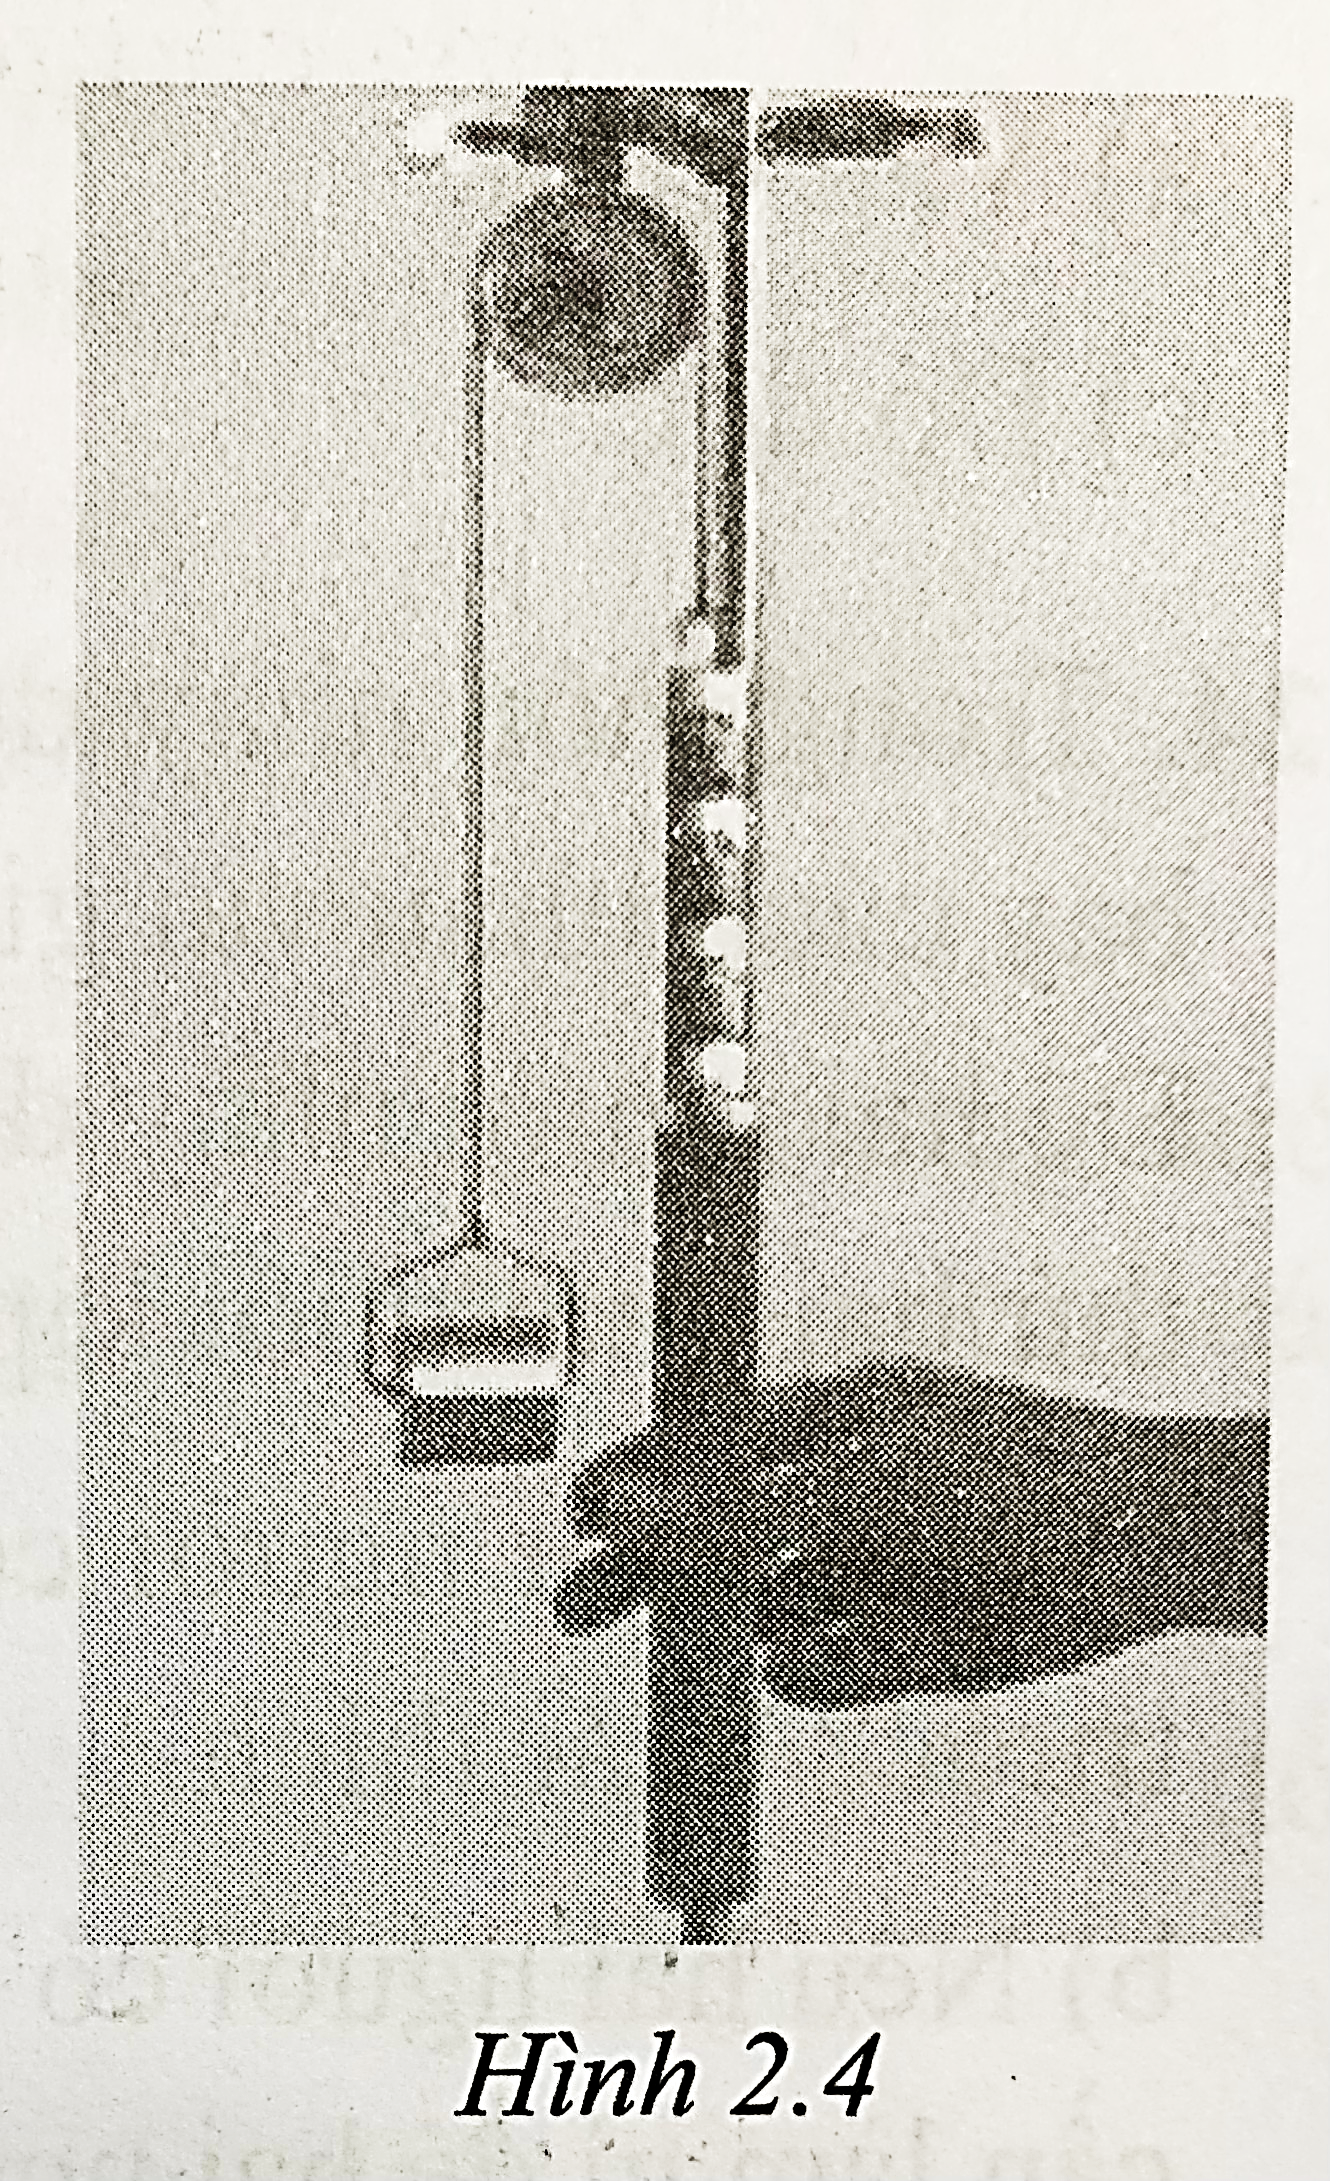 Thí nghiệm đo lực cần để kéo vật lên bằng ròng rọc được bố trí như hình 2.4